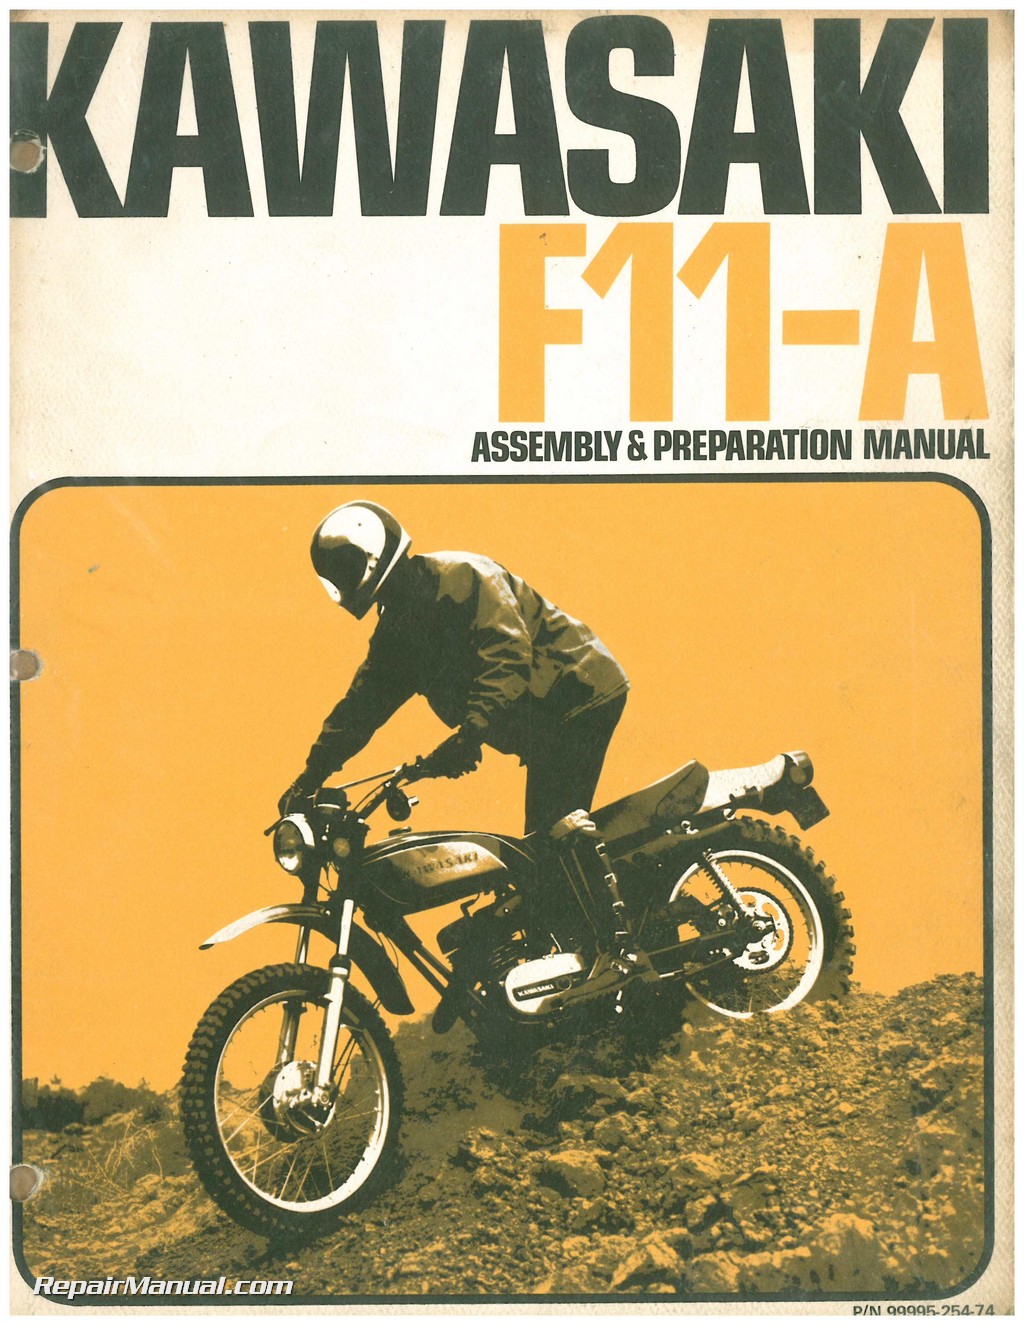 Kawasaki F11-A 250 Assembly and Preparation Manual 